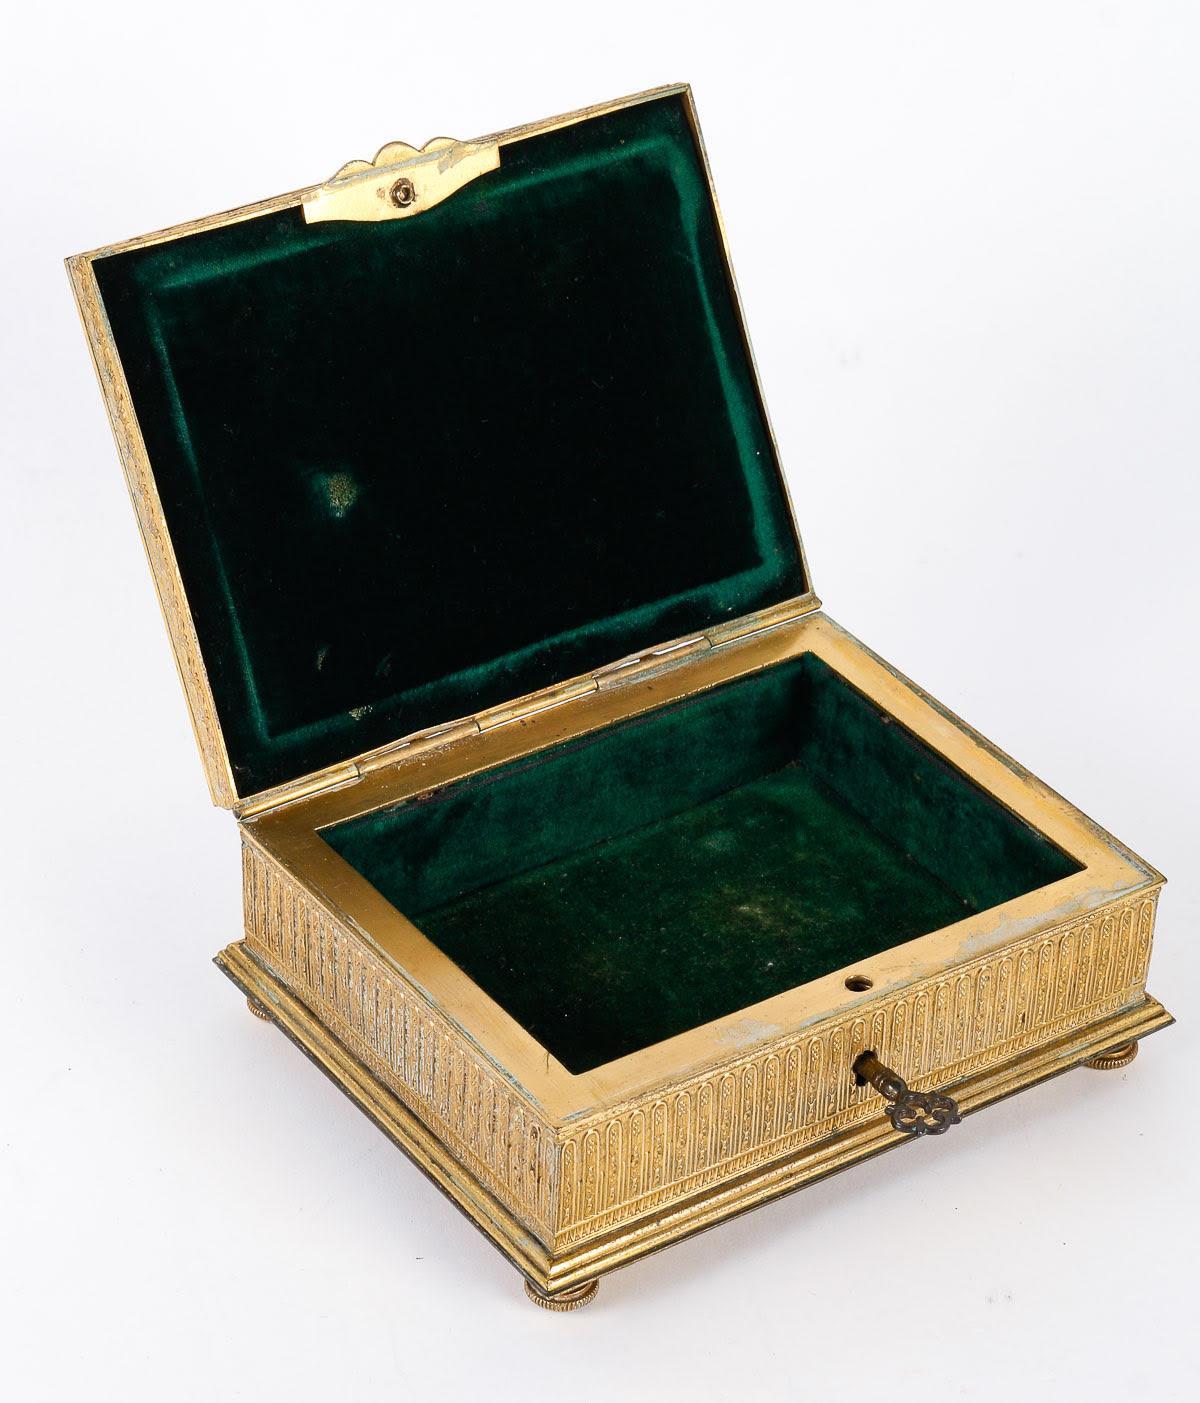 Boîte en bronze ciselé et doré, époque Napoléon III.

Boîte en bronze ciselé et doré avec une belle plaque émaillée, intérieur en velours vert, avec sa clé d'origine, époque Napoléon III, XIXe siècle.
H : 5cm, L : 15.5cm, P : 12.5cm